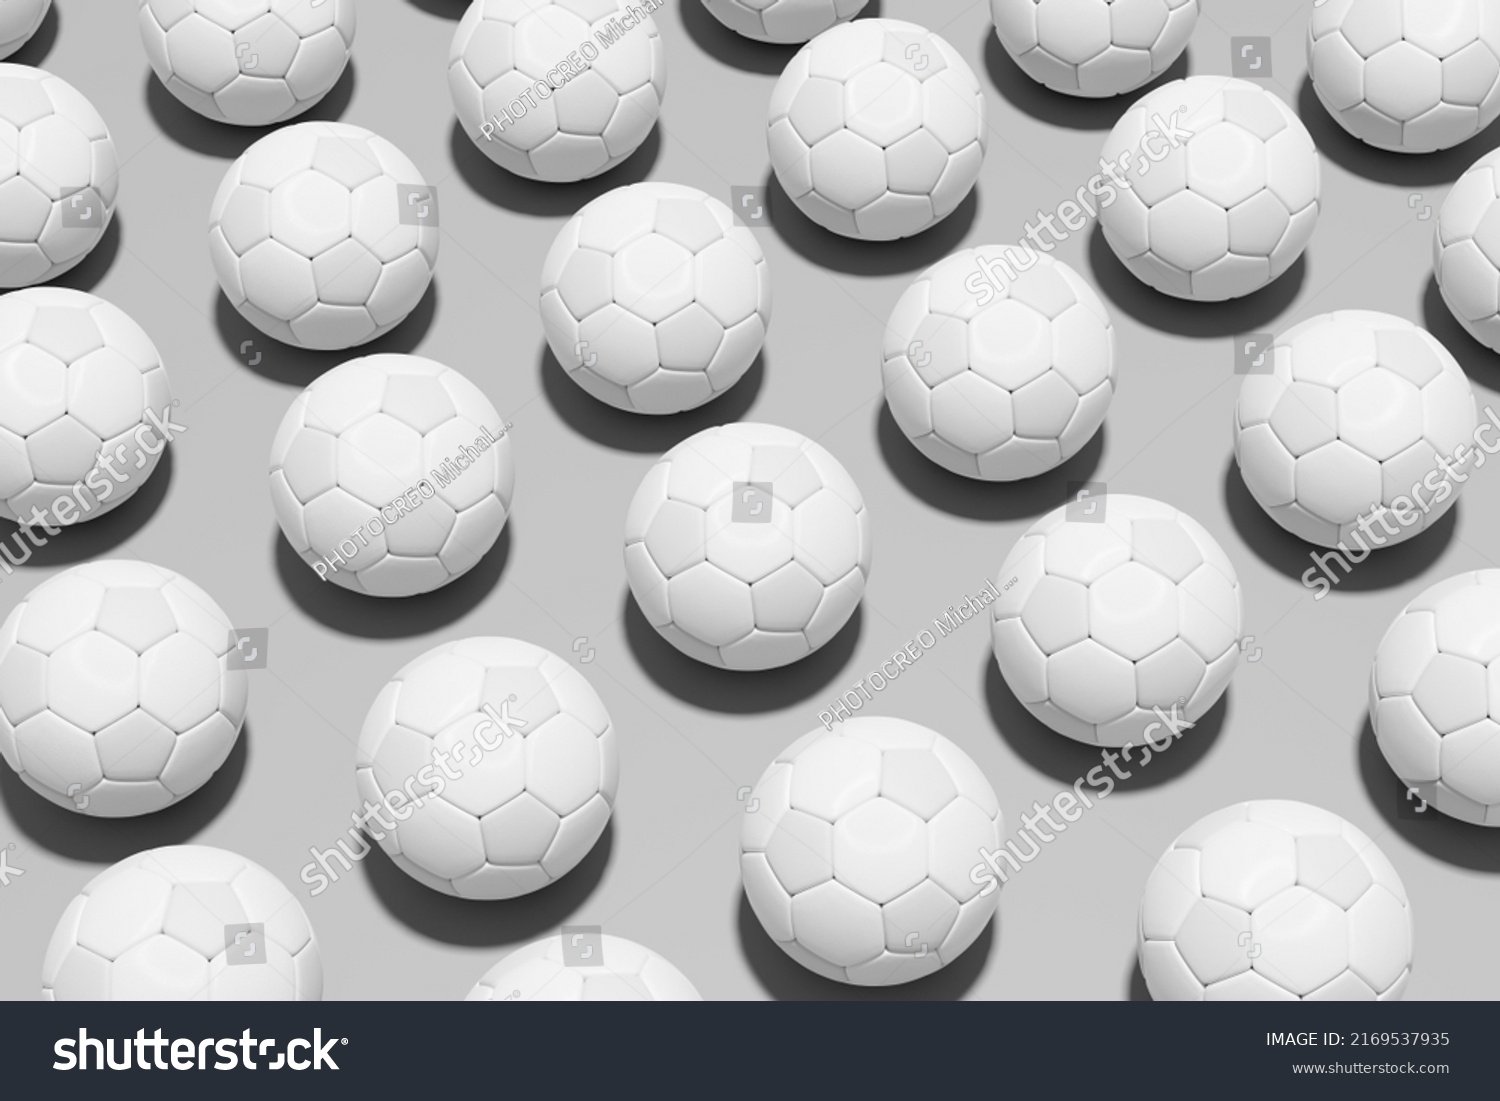 Football Soccer Balls Flat Lay Design Stock Illustration 2169537935 ...